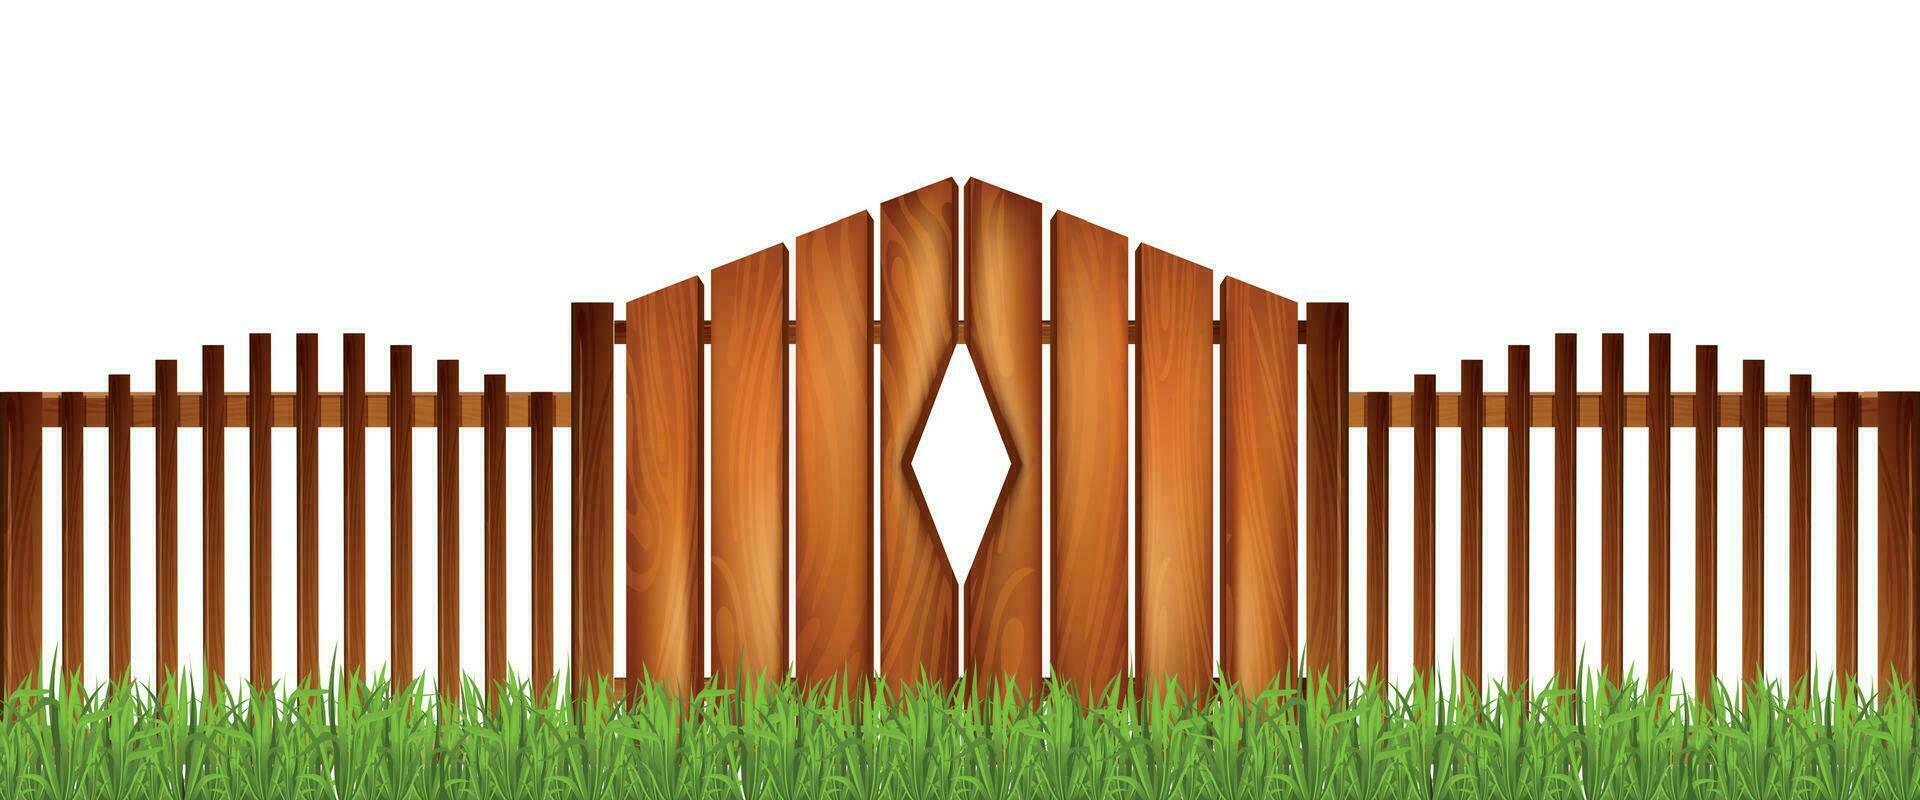 houten hek realistisch samenstelling vector